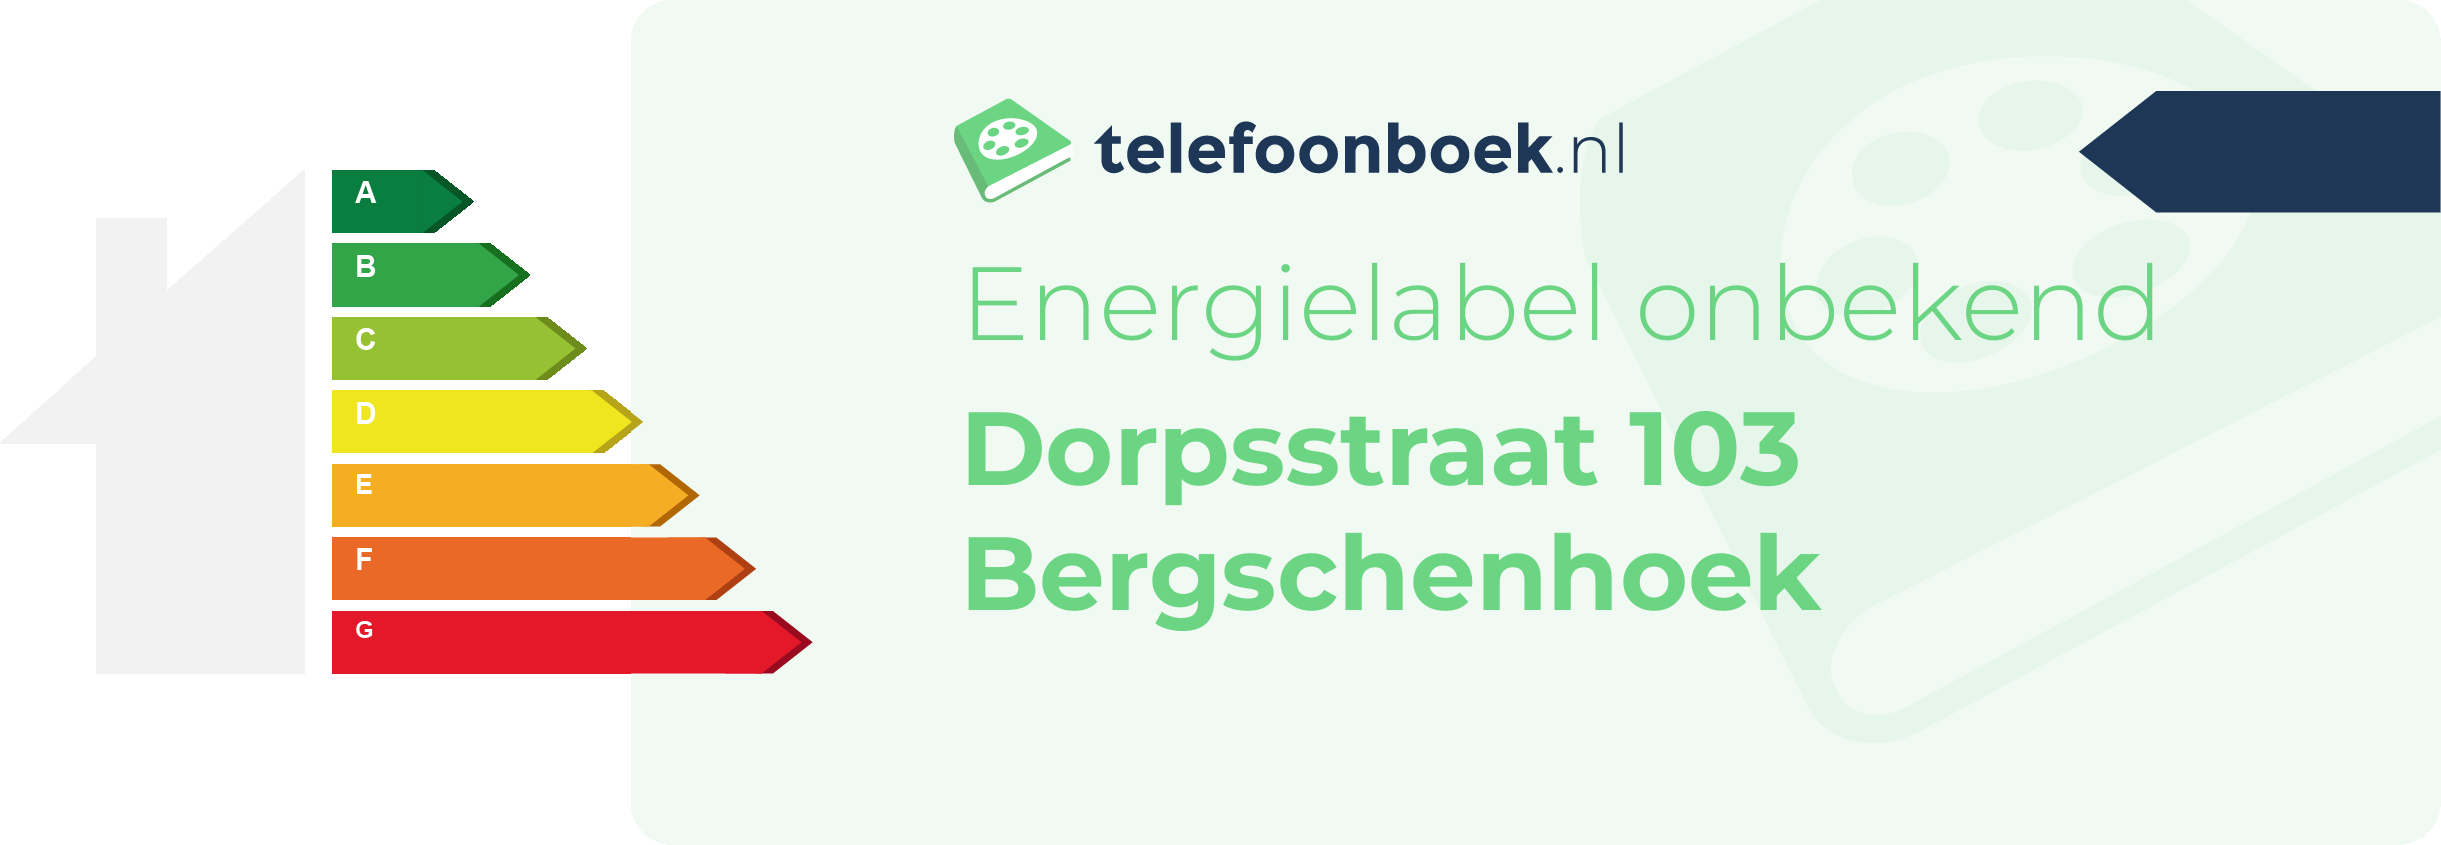 Energielabel Dorpsstraat 103 Bergschenhoek